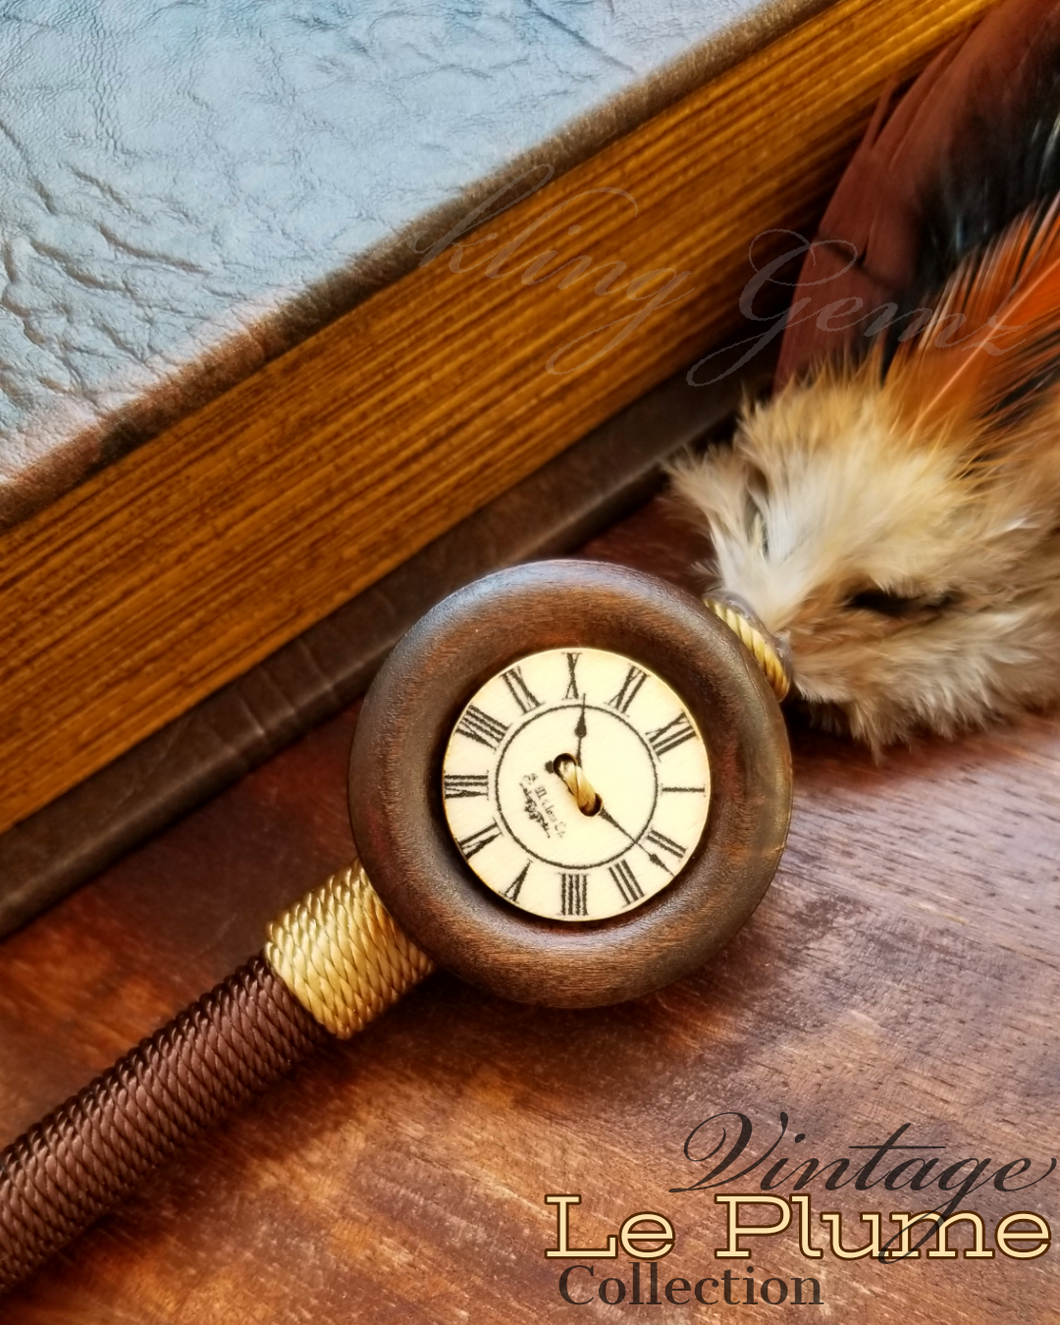 Tuscan Clock Vintage Le Plume